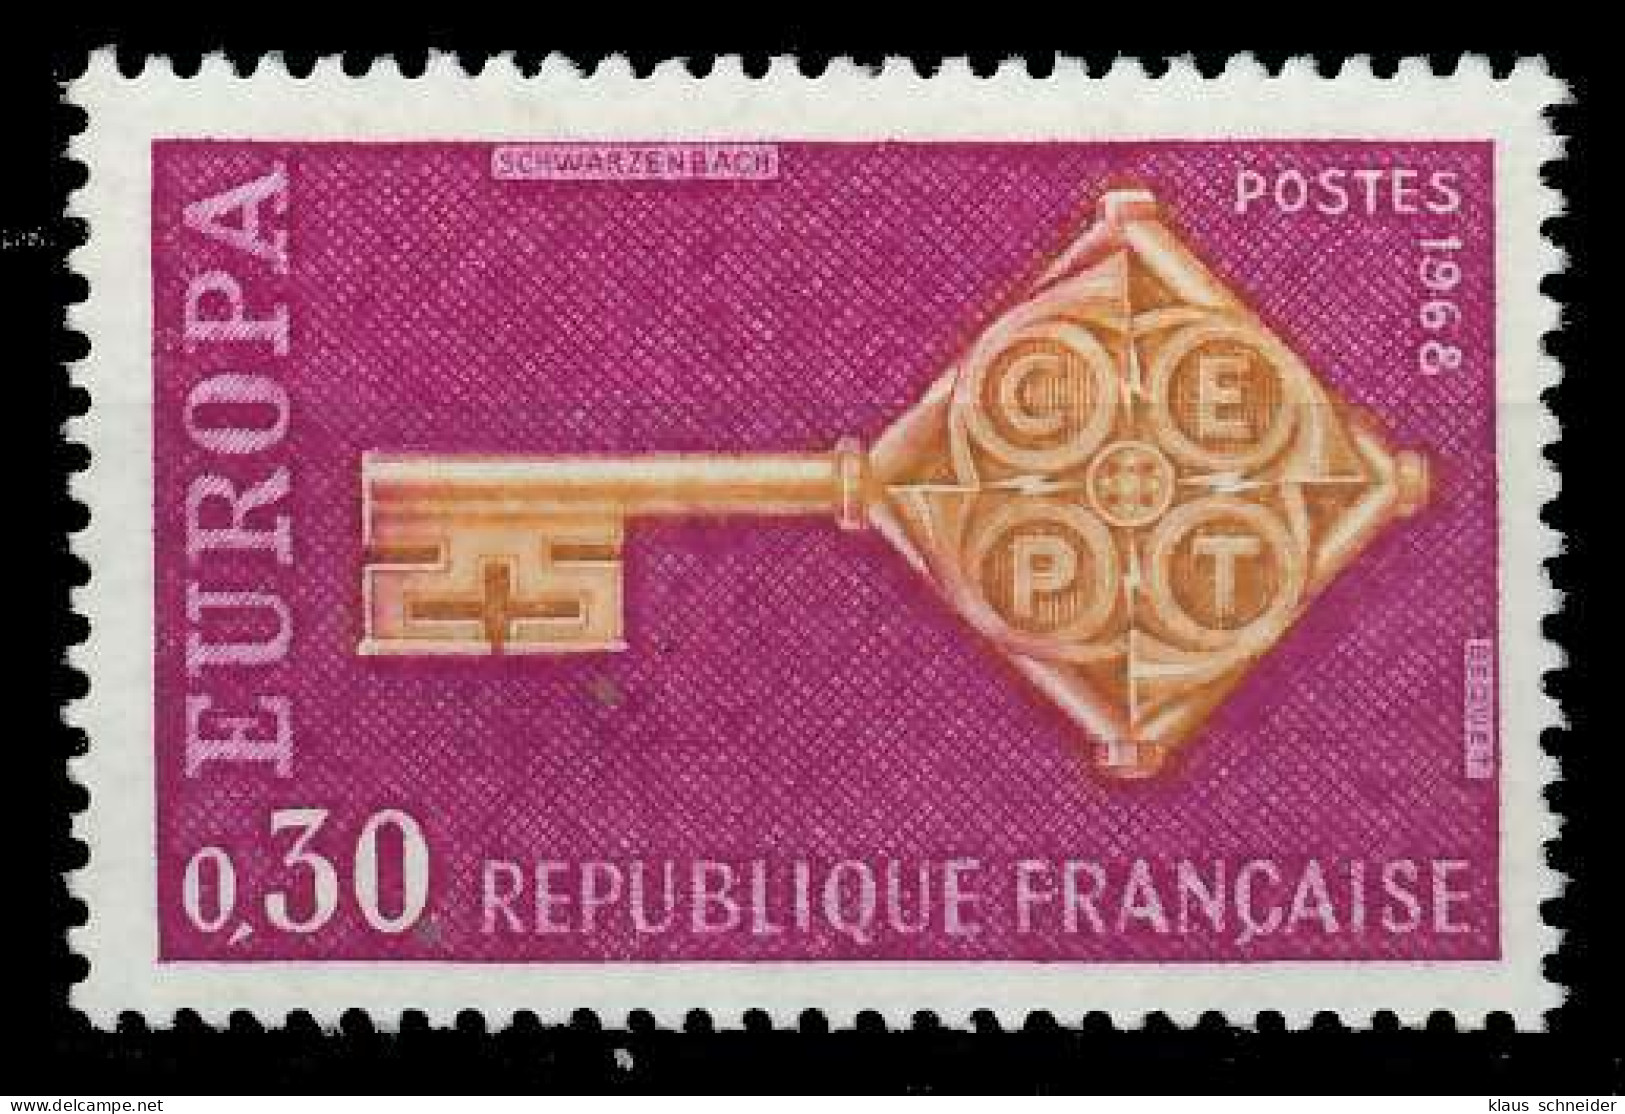 FRANKREICH 1968 Nr 1621 Postfrisch SA52D72 - Neufs